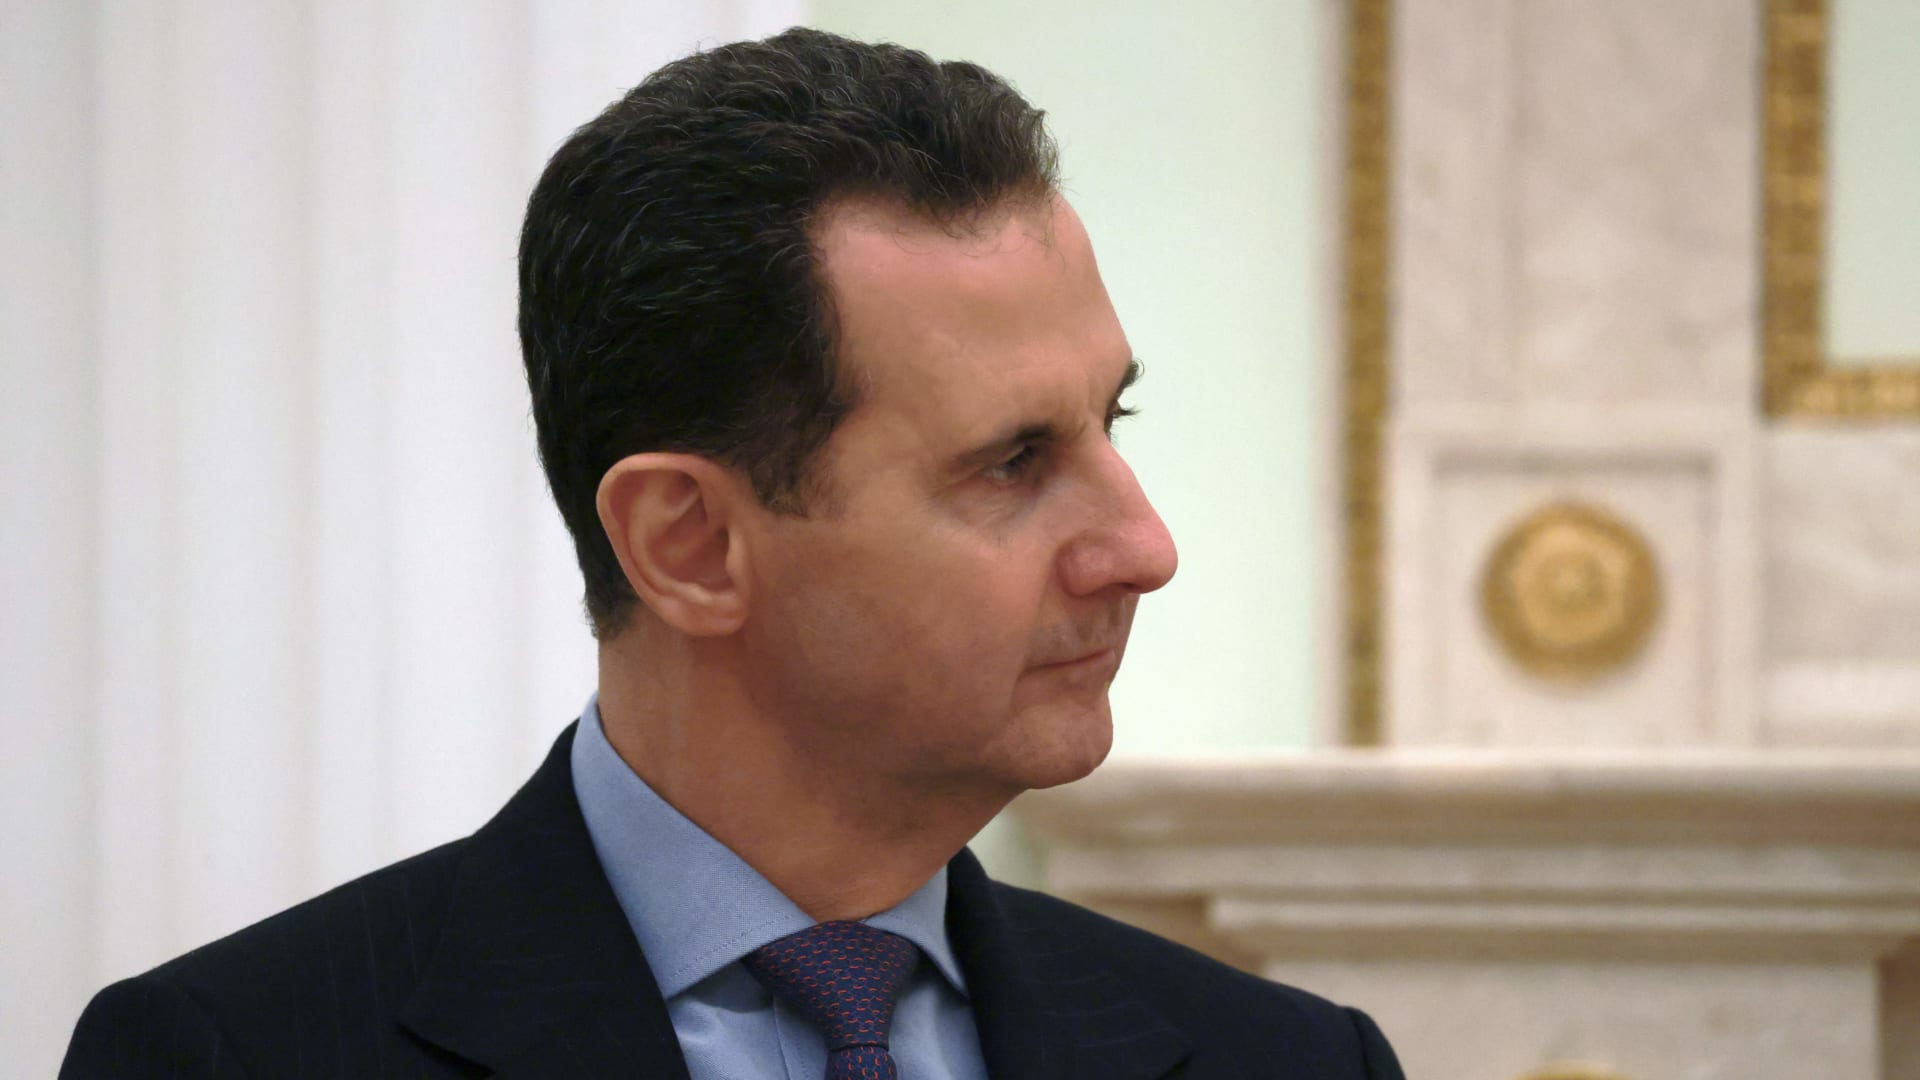 ¬الأسد يعول على "النظام العالمي" الجديد للمساعدة في إعادة تأهيله.. فهل يمكن إنعاش اقتصاده في ظل العقوبات؟ 